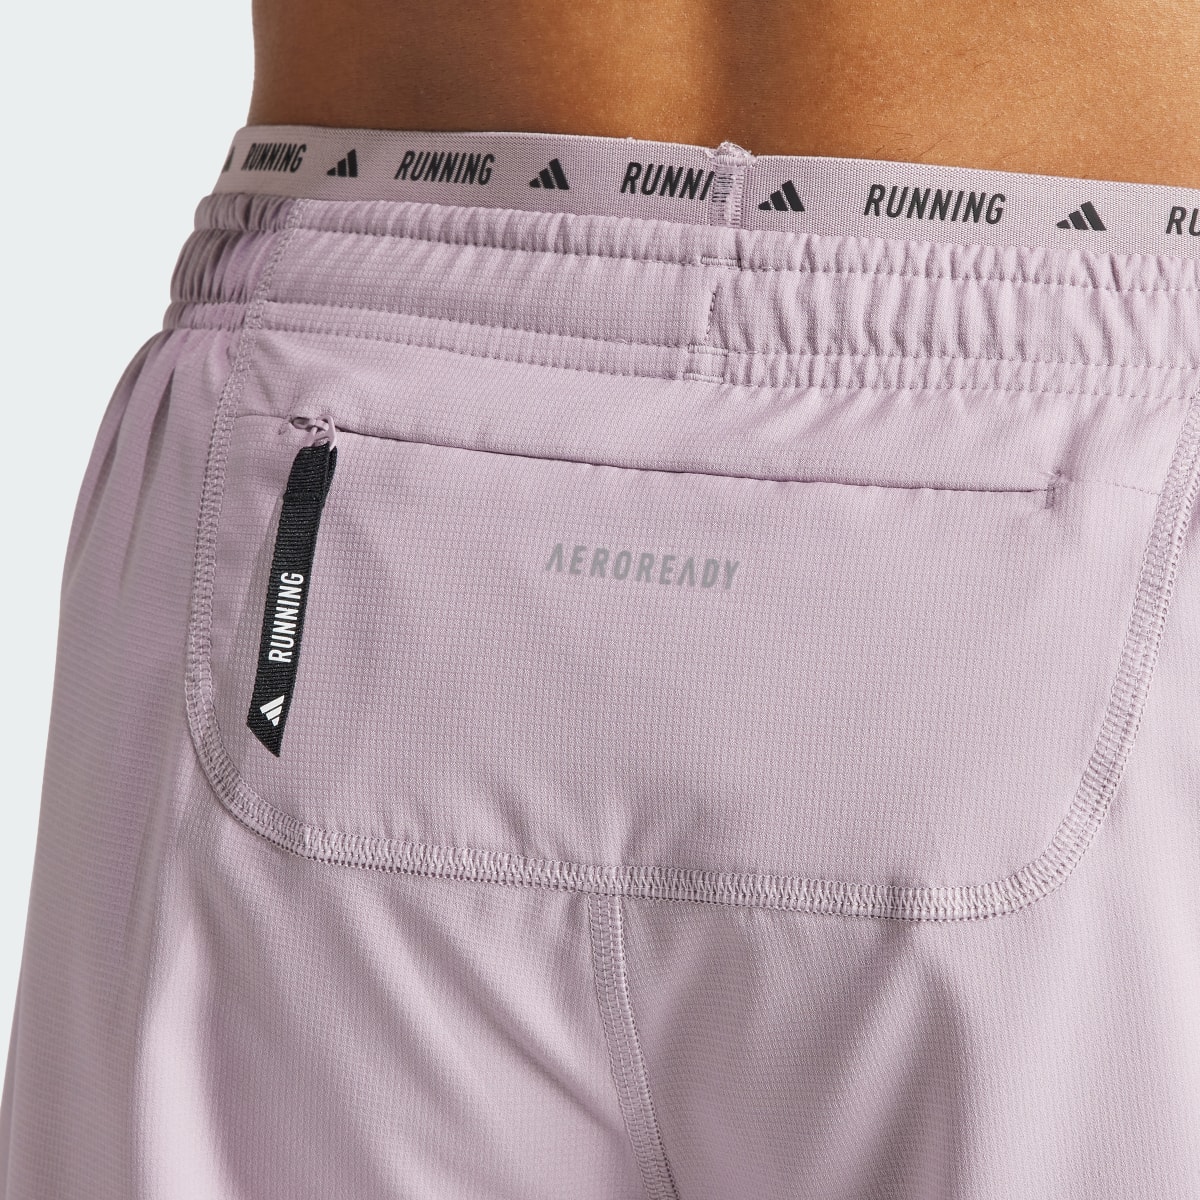 Adidas Own the Run 3-Stripes Shorts. 6